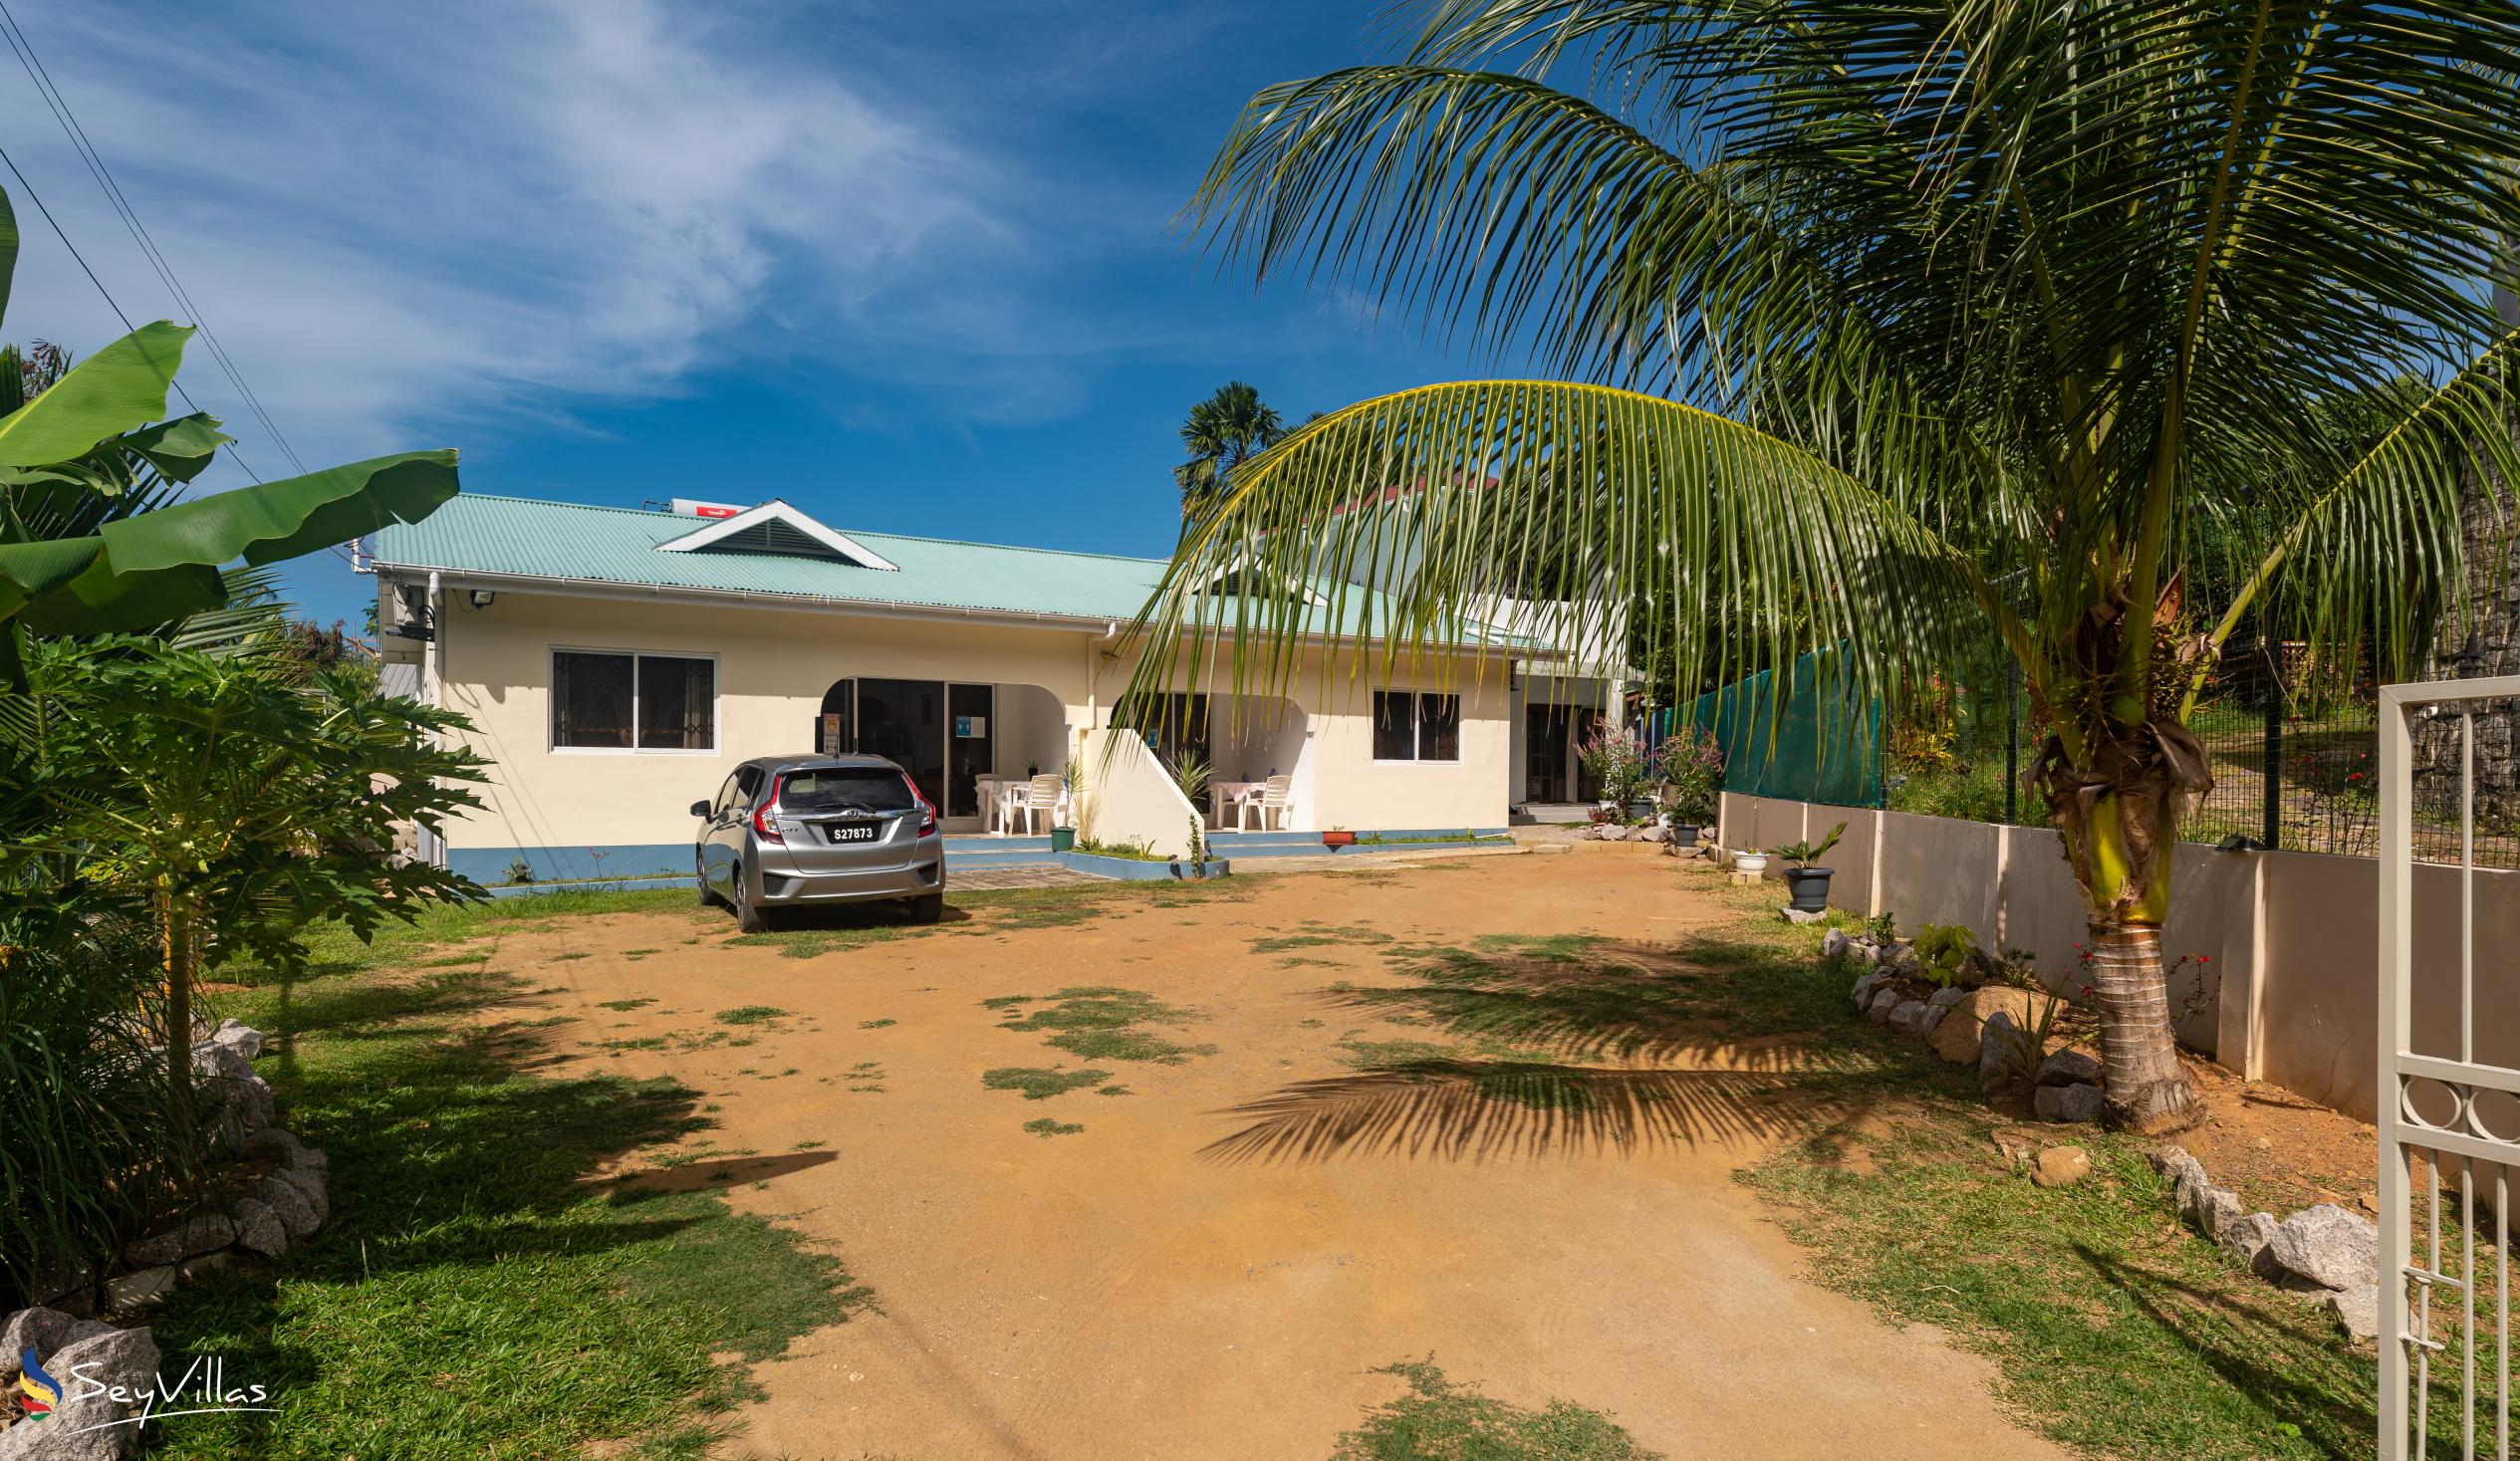 Photo 3: Farida Apartments - Outdoor area - Mahé (Seychelles)